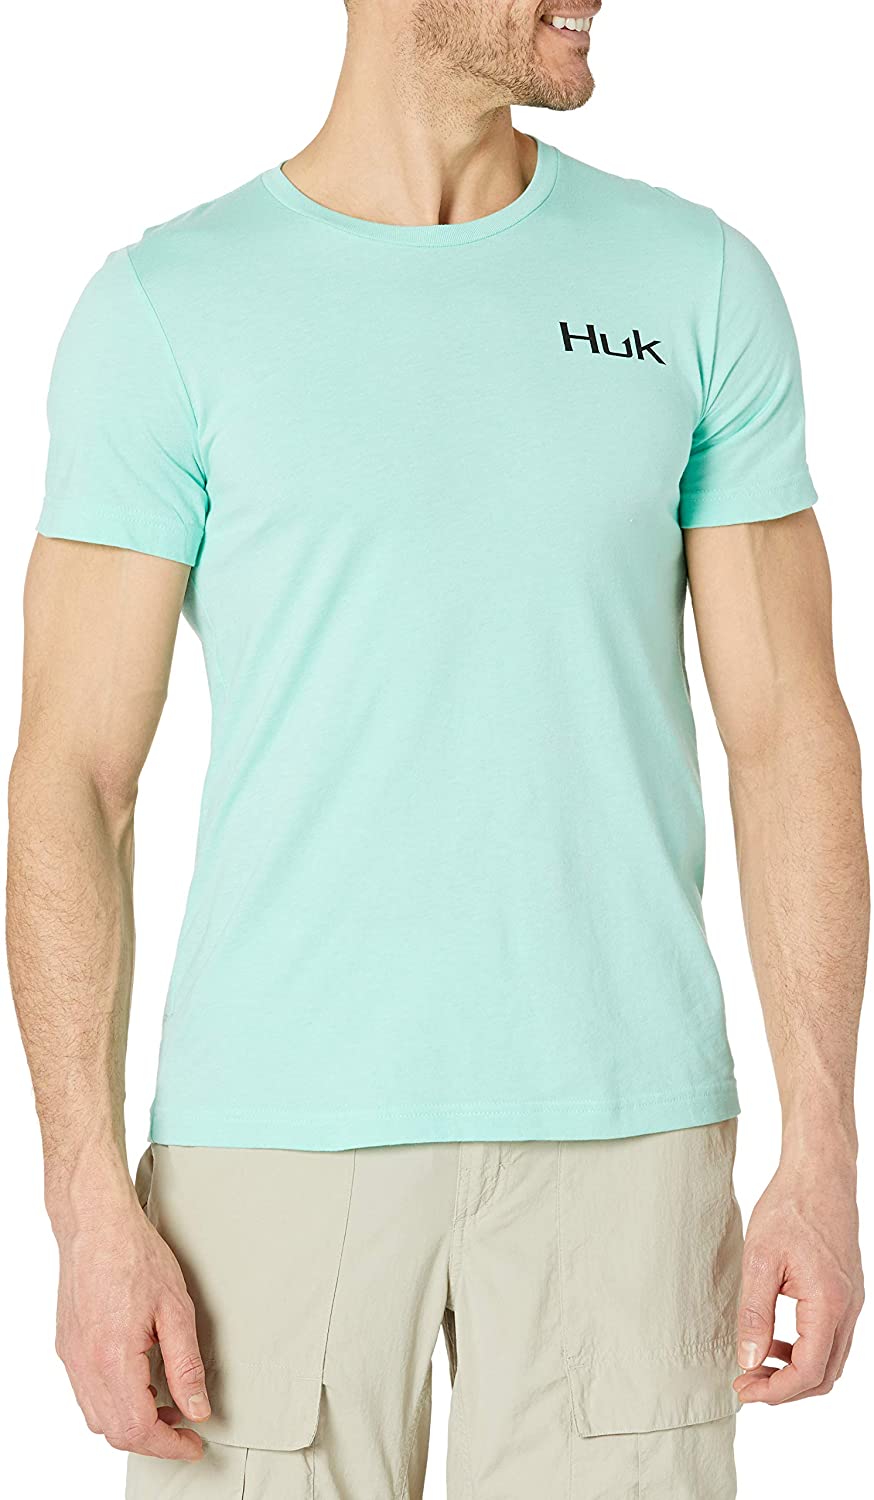 Huk Men's Beach Fishin' Short Sleeve Tee Quick-dry Performance Fishing Shirt  -  UK